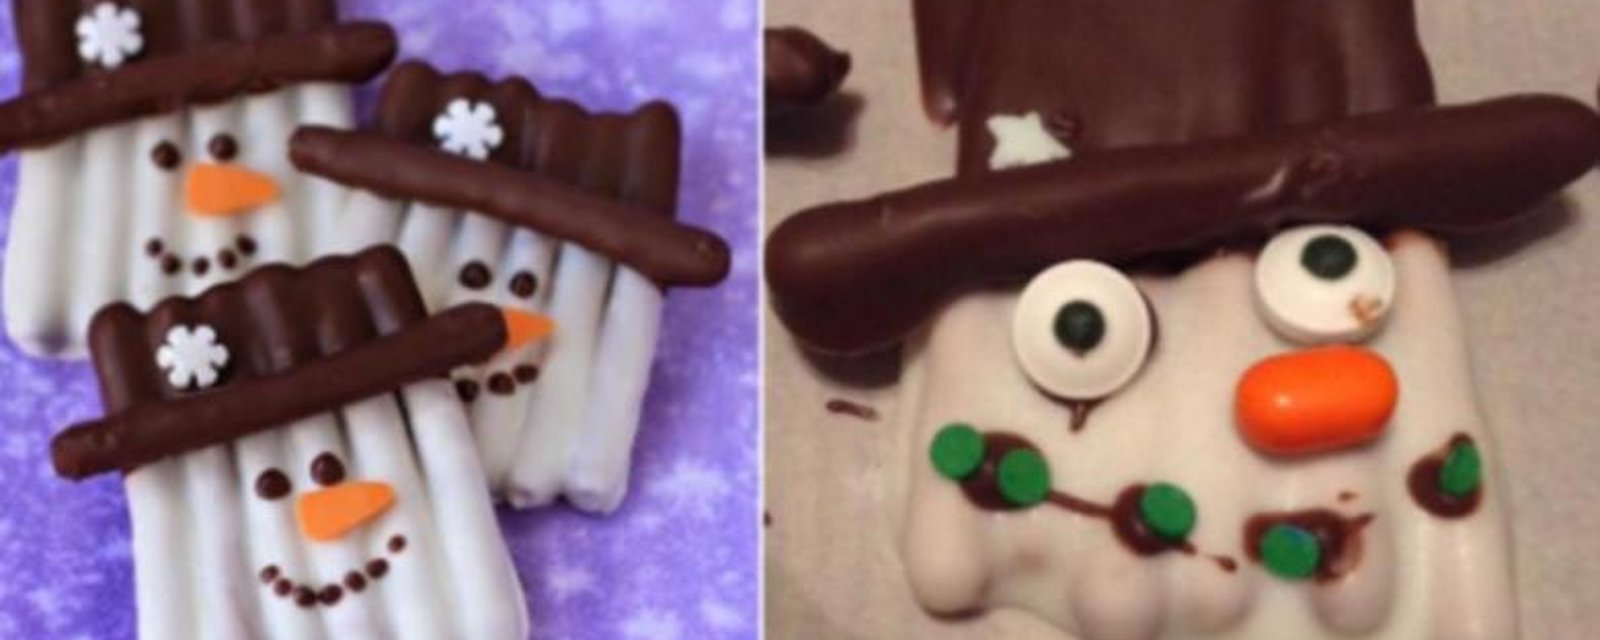 16 Desserts de Noël inspirés de net qui ont tourné au désastre! Des flops hilarants!!! 